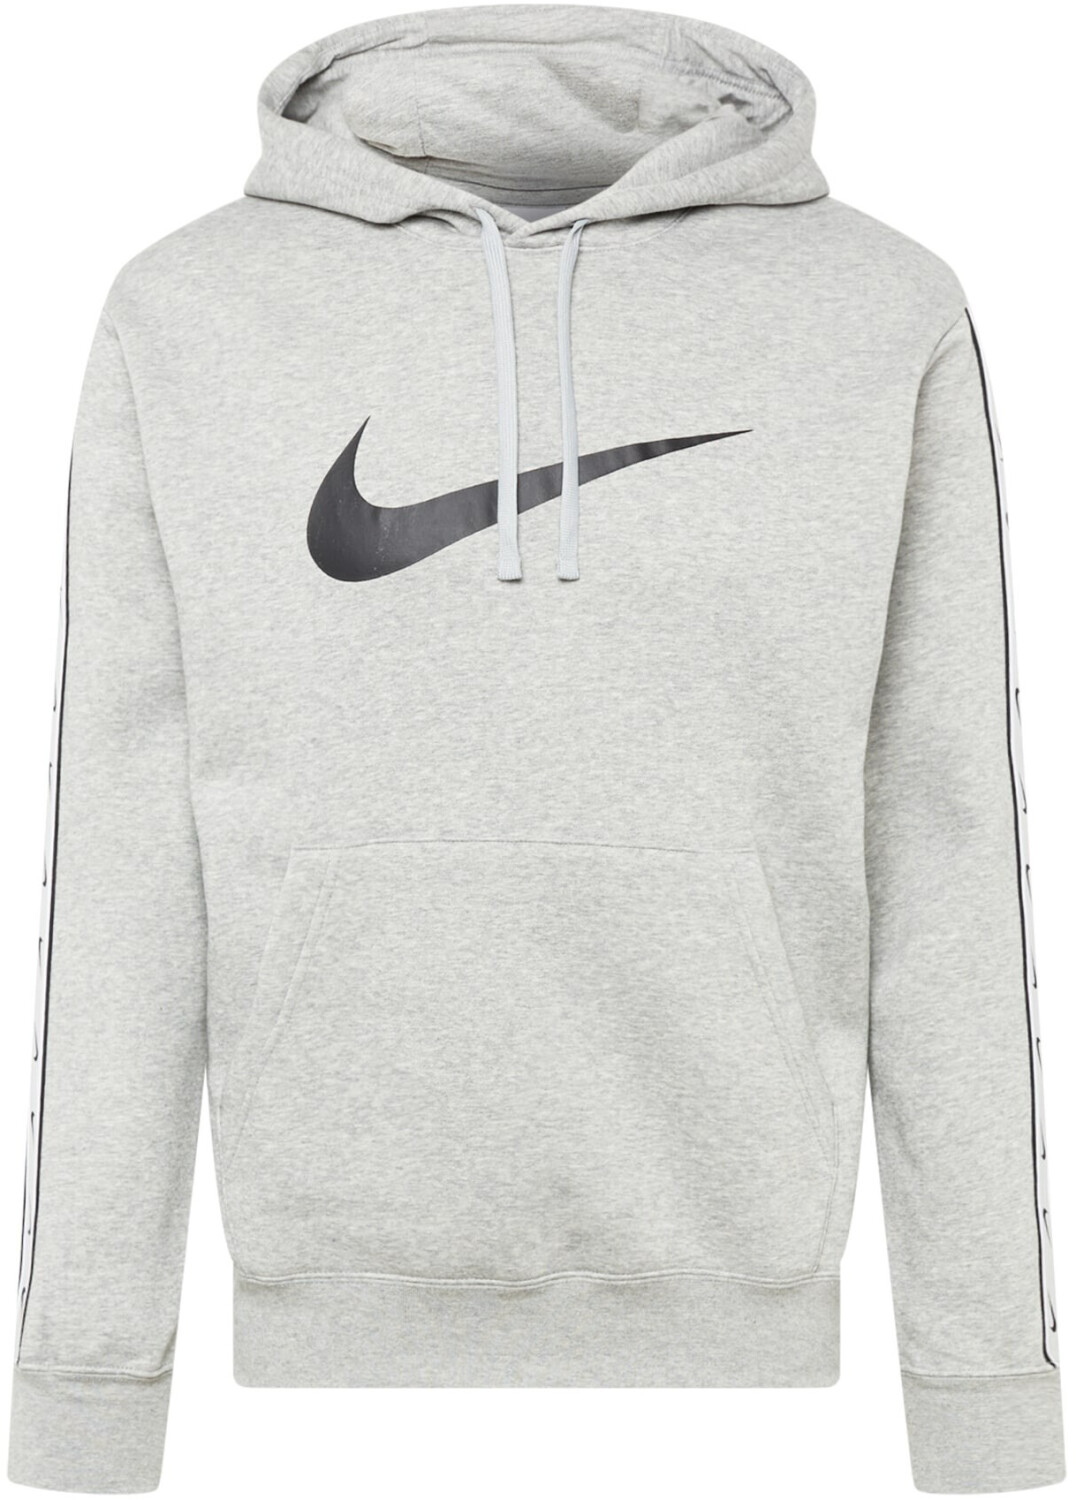 Nike Pullover Fleece | (DX2028) Hoodie Preisvergleich € grey dark bei heather/black 69,90 ab